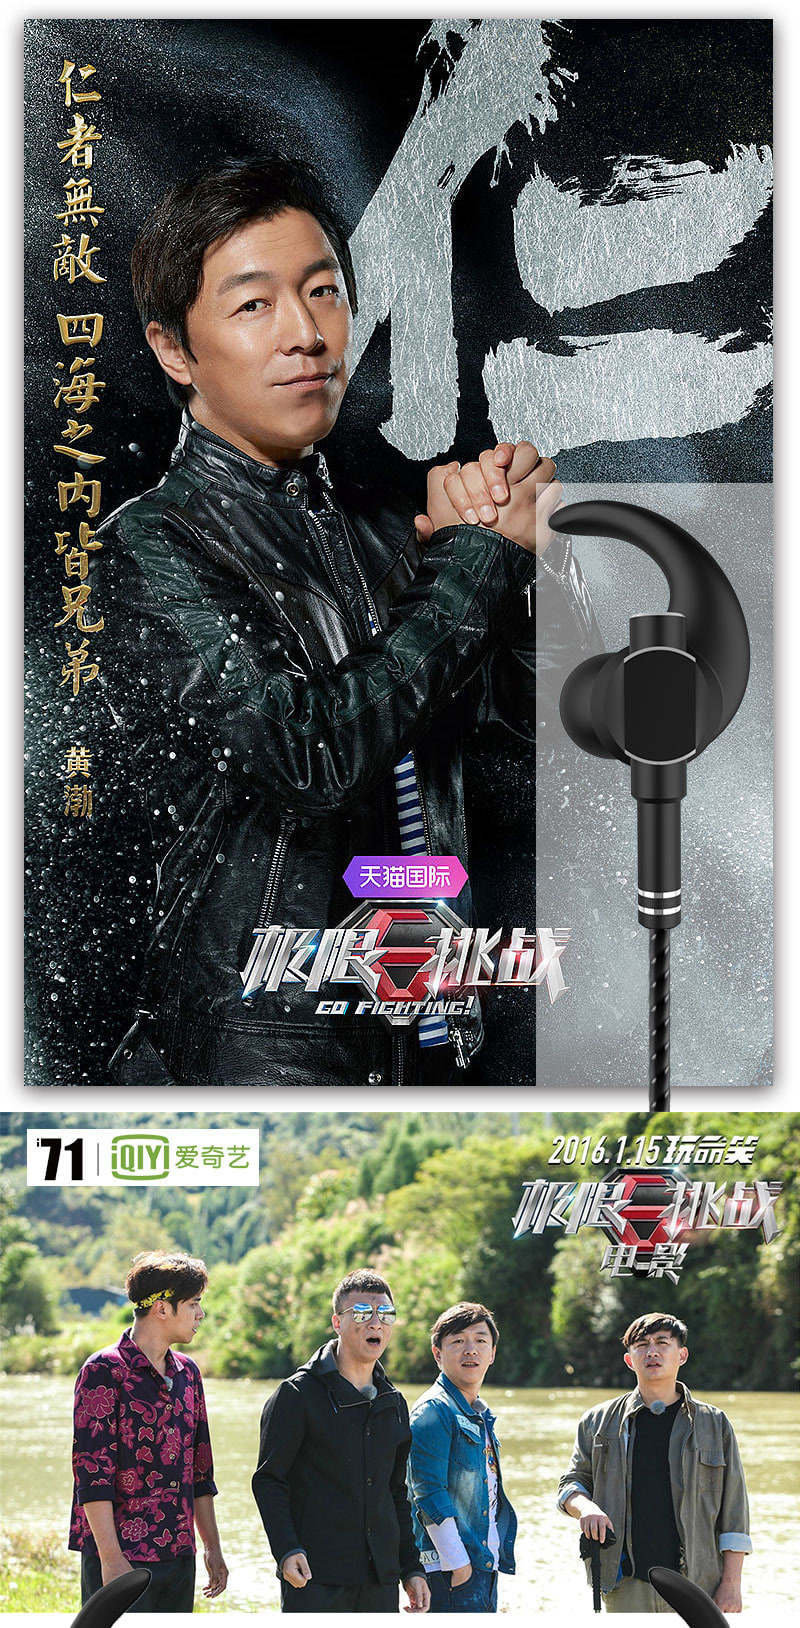 极限挑战 爱奇艺i71定制耳机QY-007重低音金属